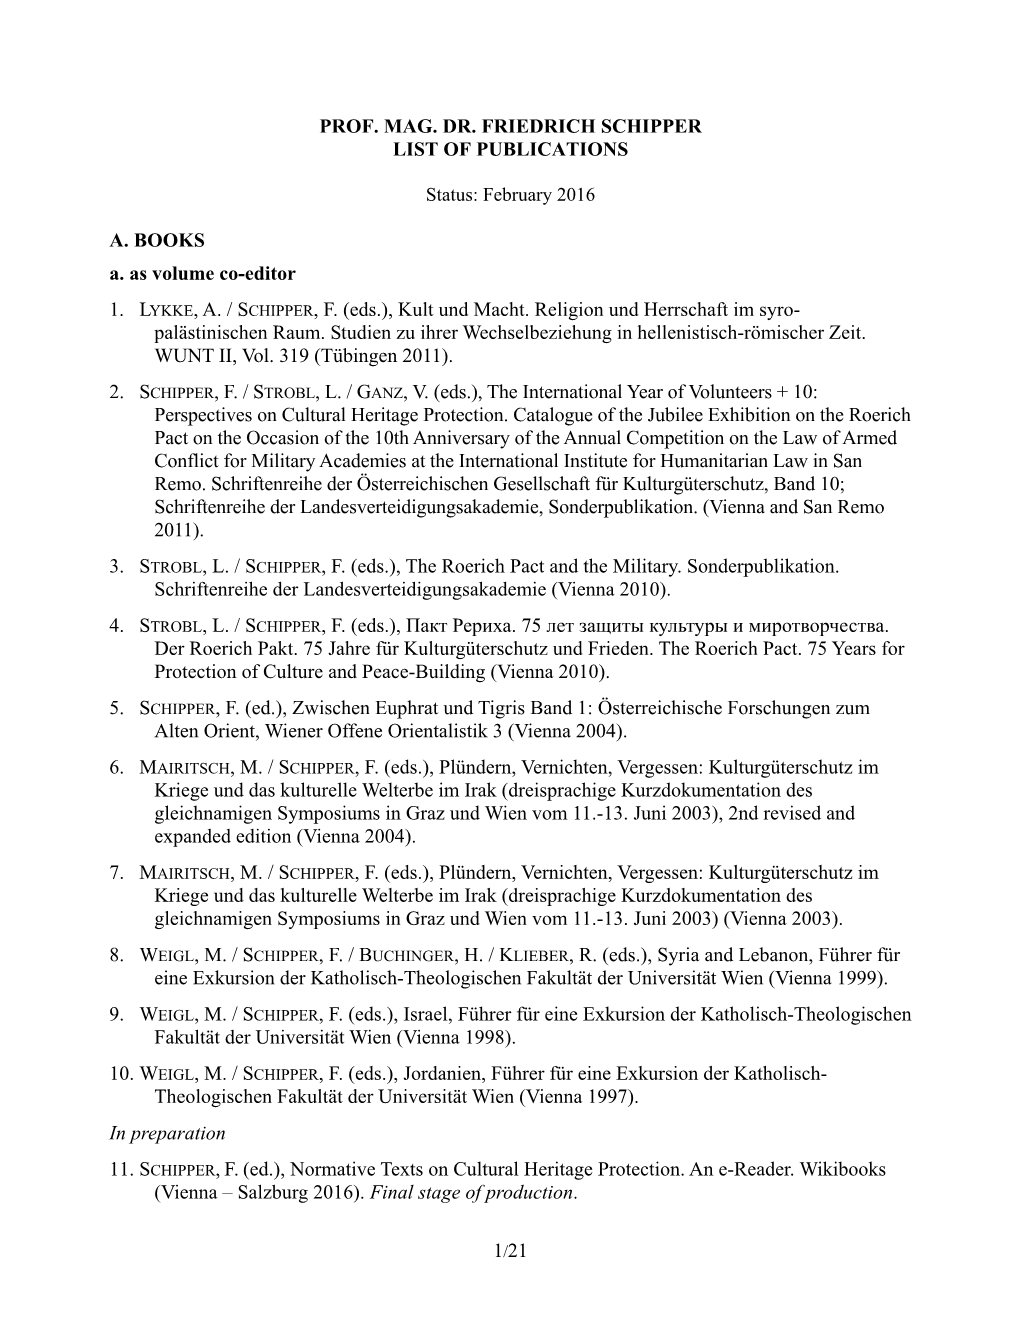 Prof. Mag. Dr. Friedrich Schipper List of Publications